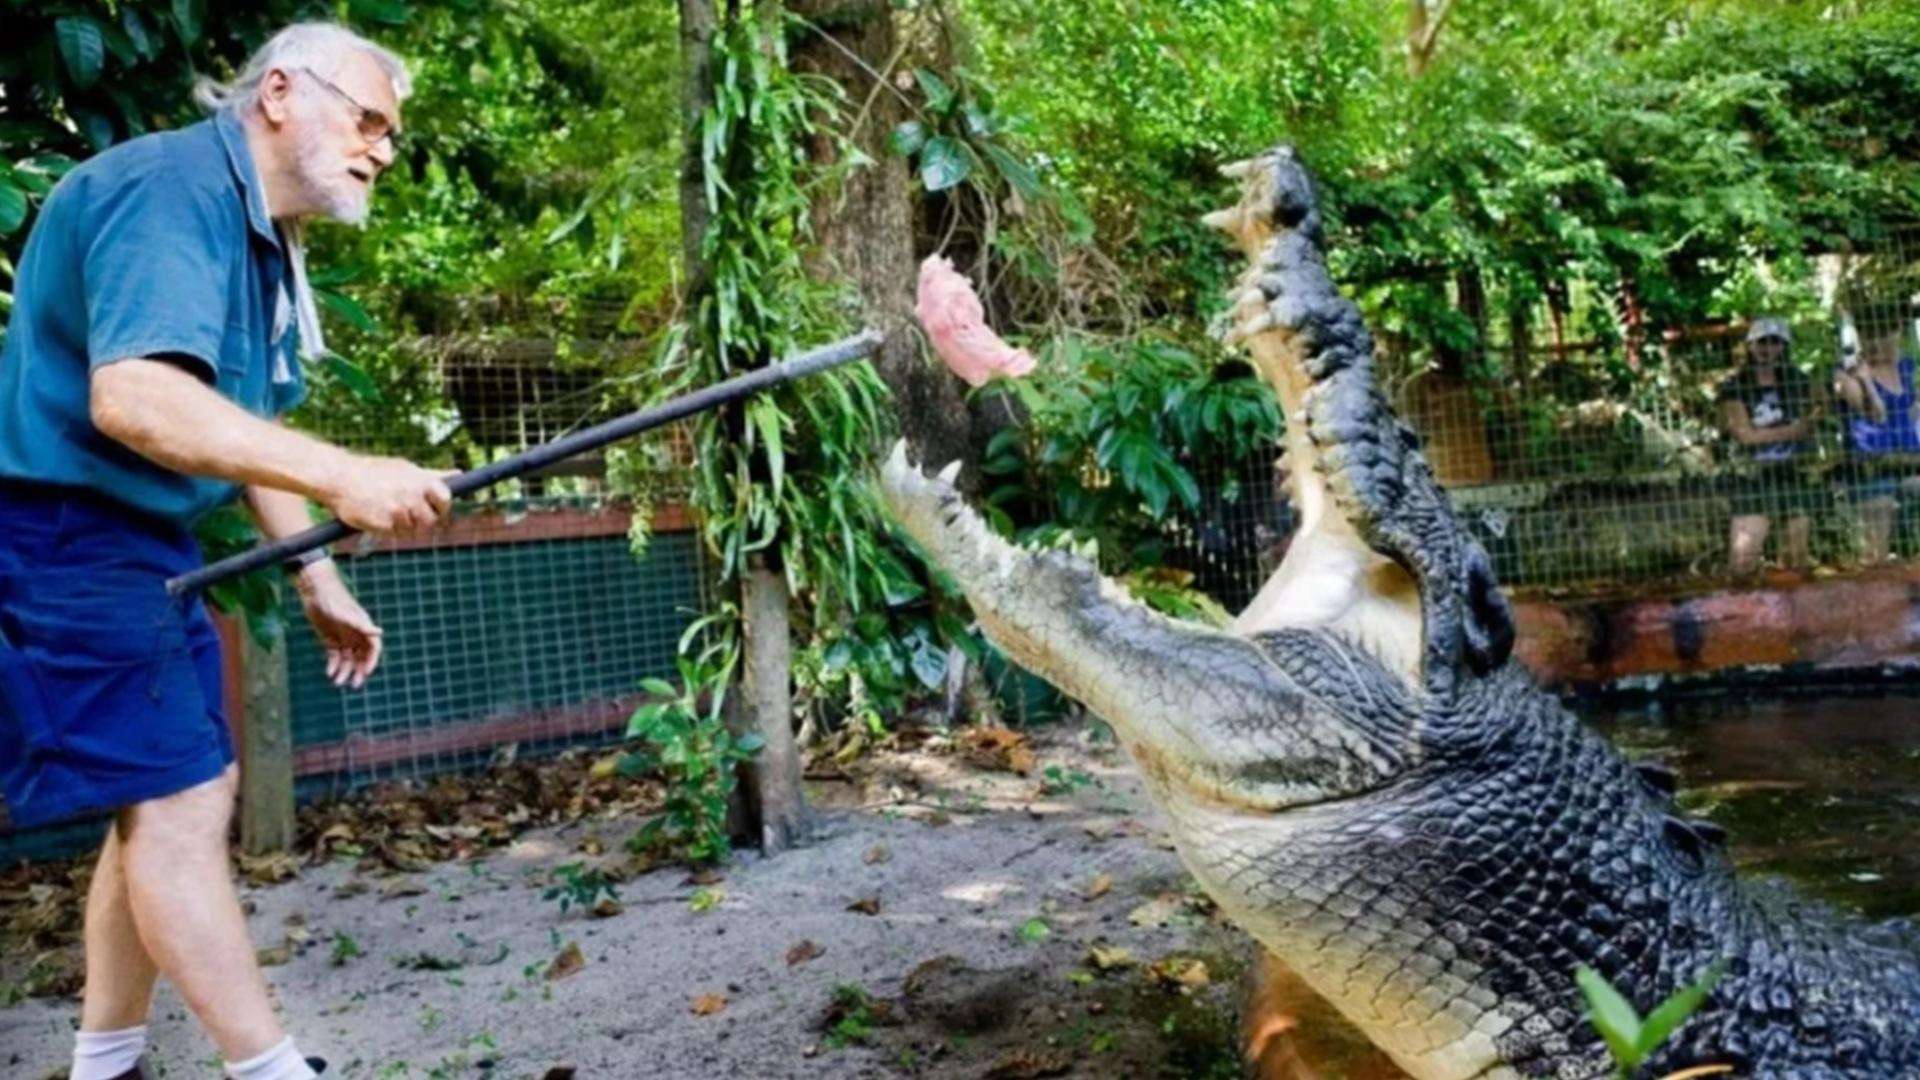 昆士兰男子与巨型鳄鱼殊死搏斗 幸运逃生 - 澳洲生活网